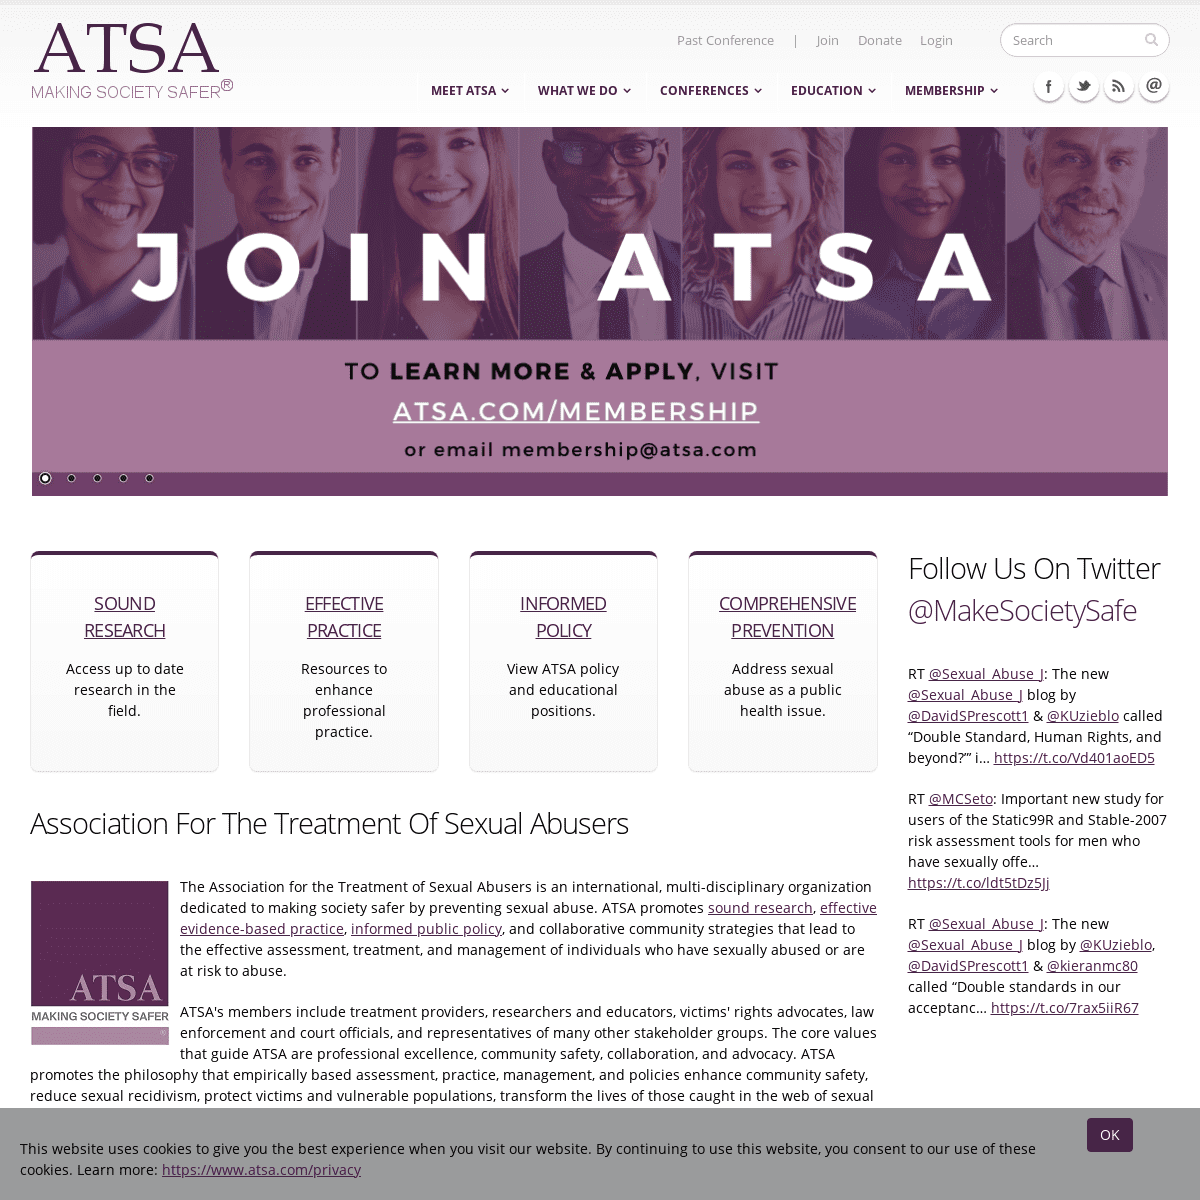 A complete backup of https://atsa.com